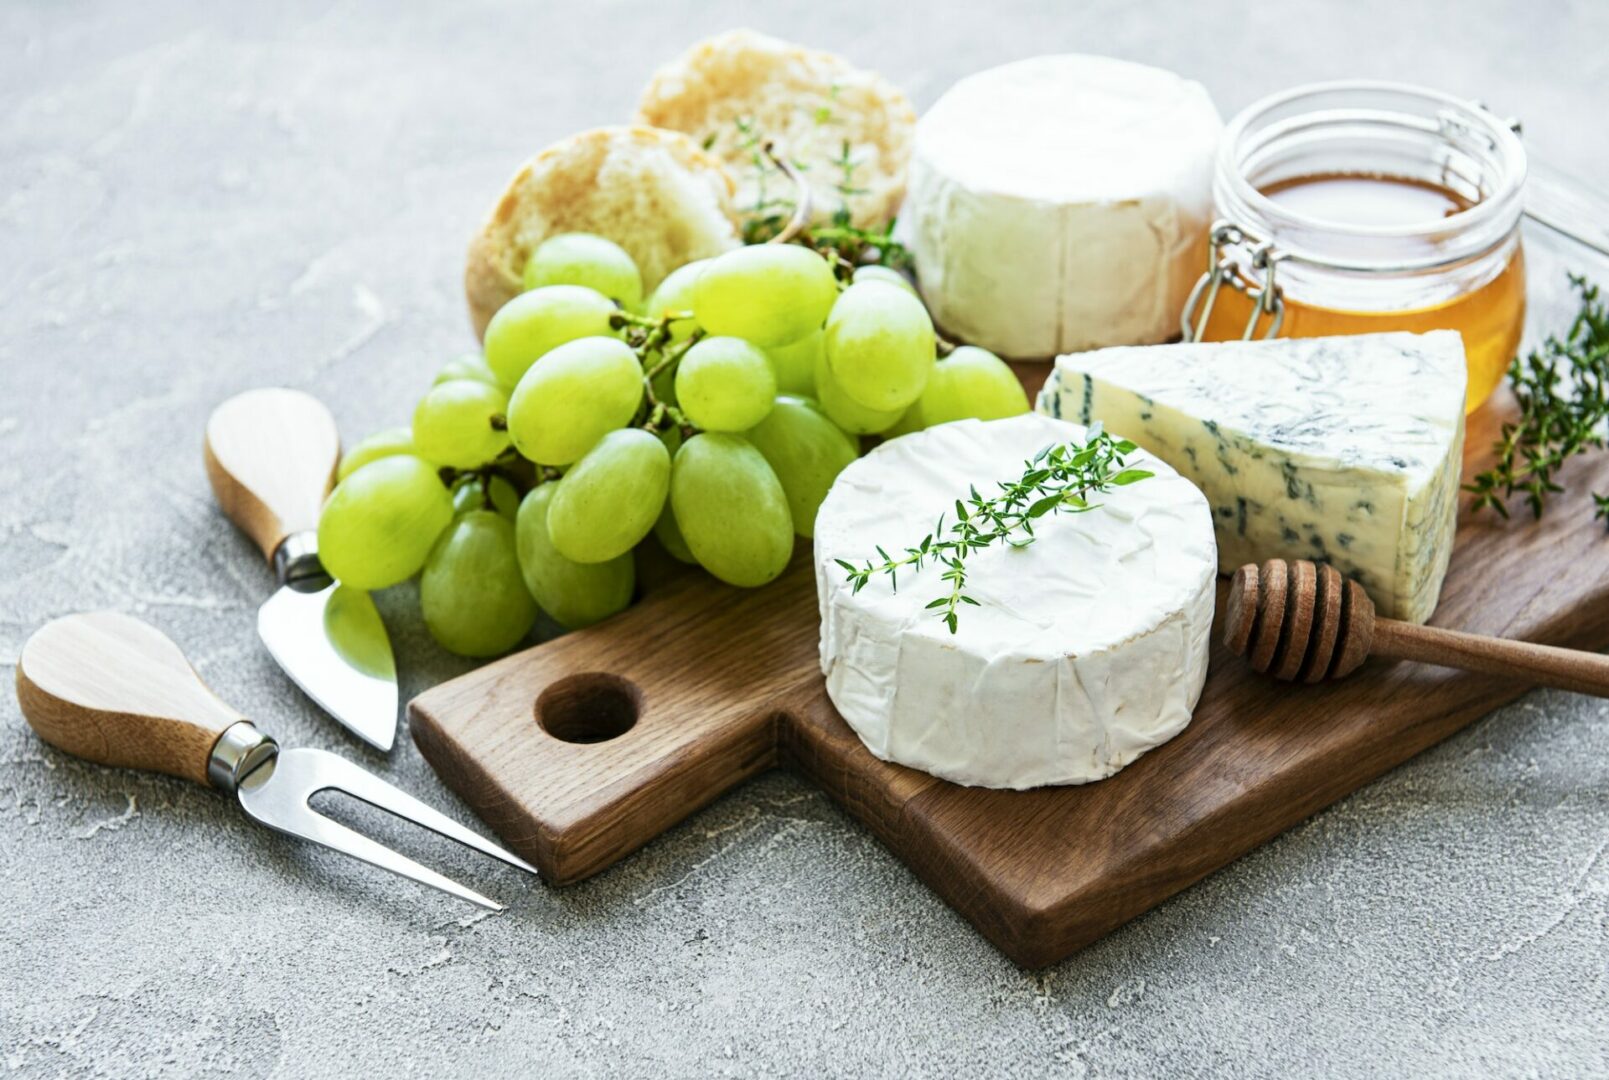 Comment impressionner vos invités avec des plateaux de fromages riches et gourmands